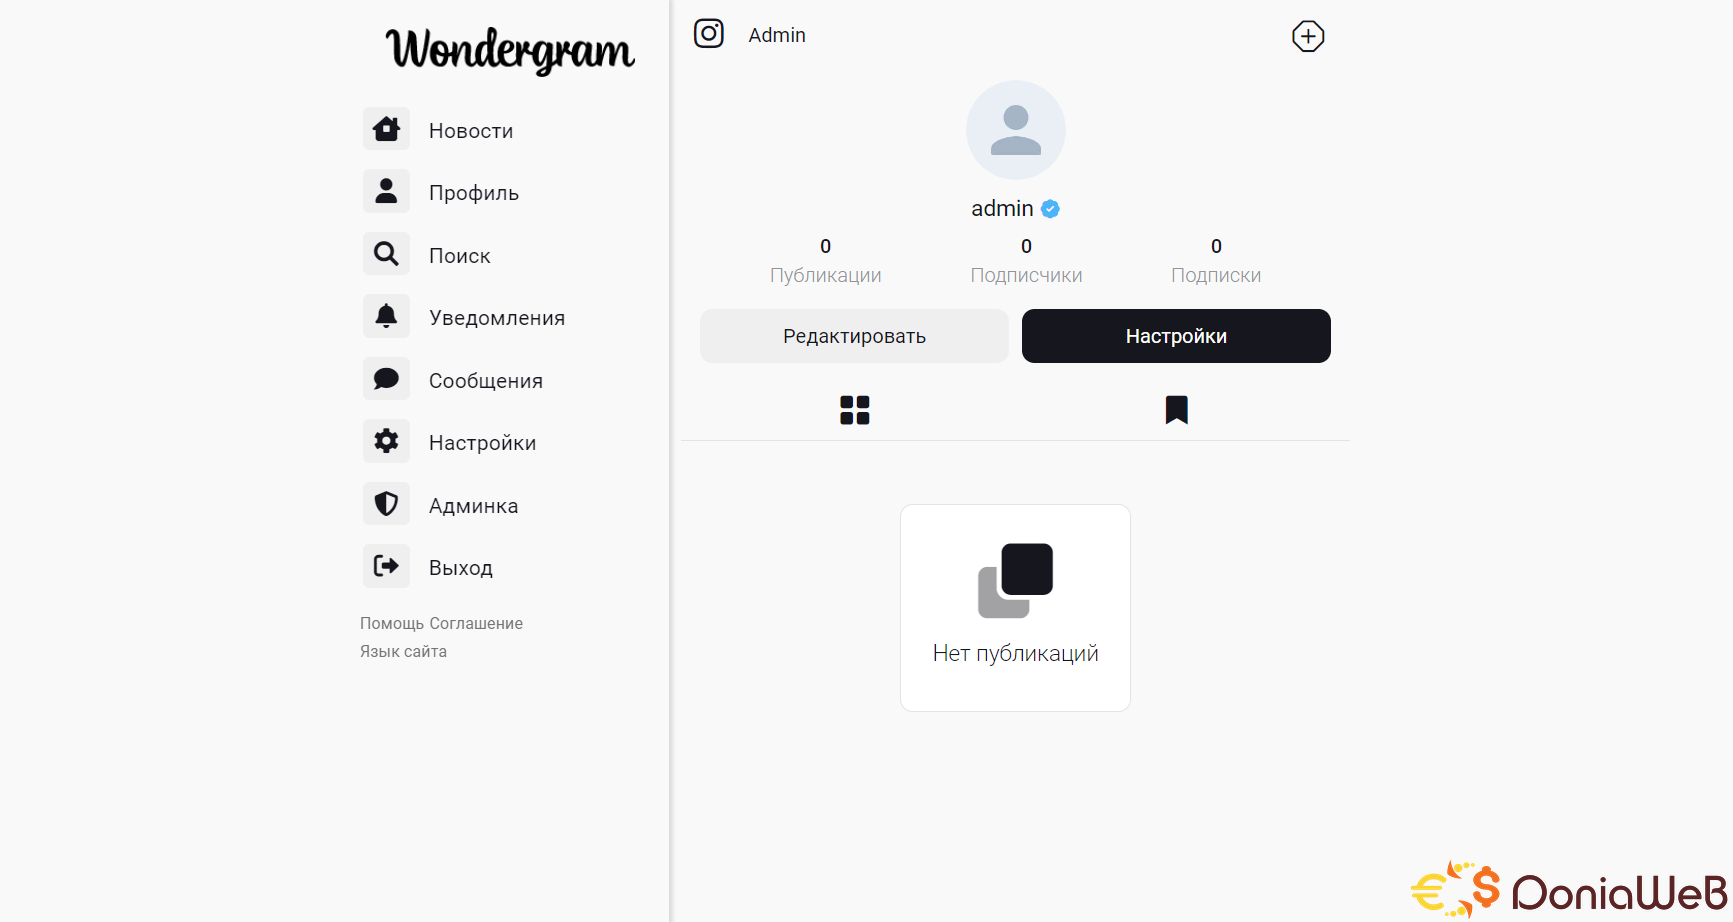 Wondergram - Clone Instagram Php, Mysql